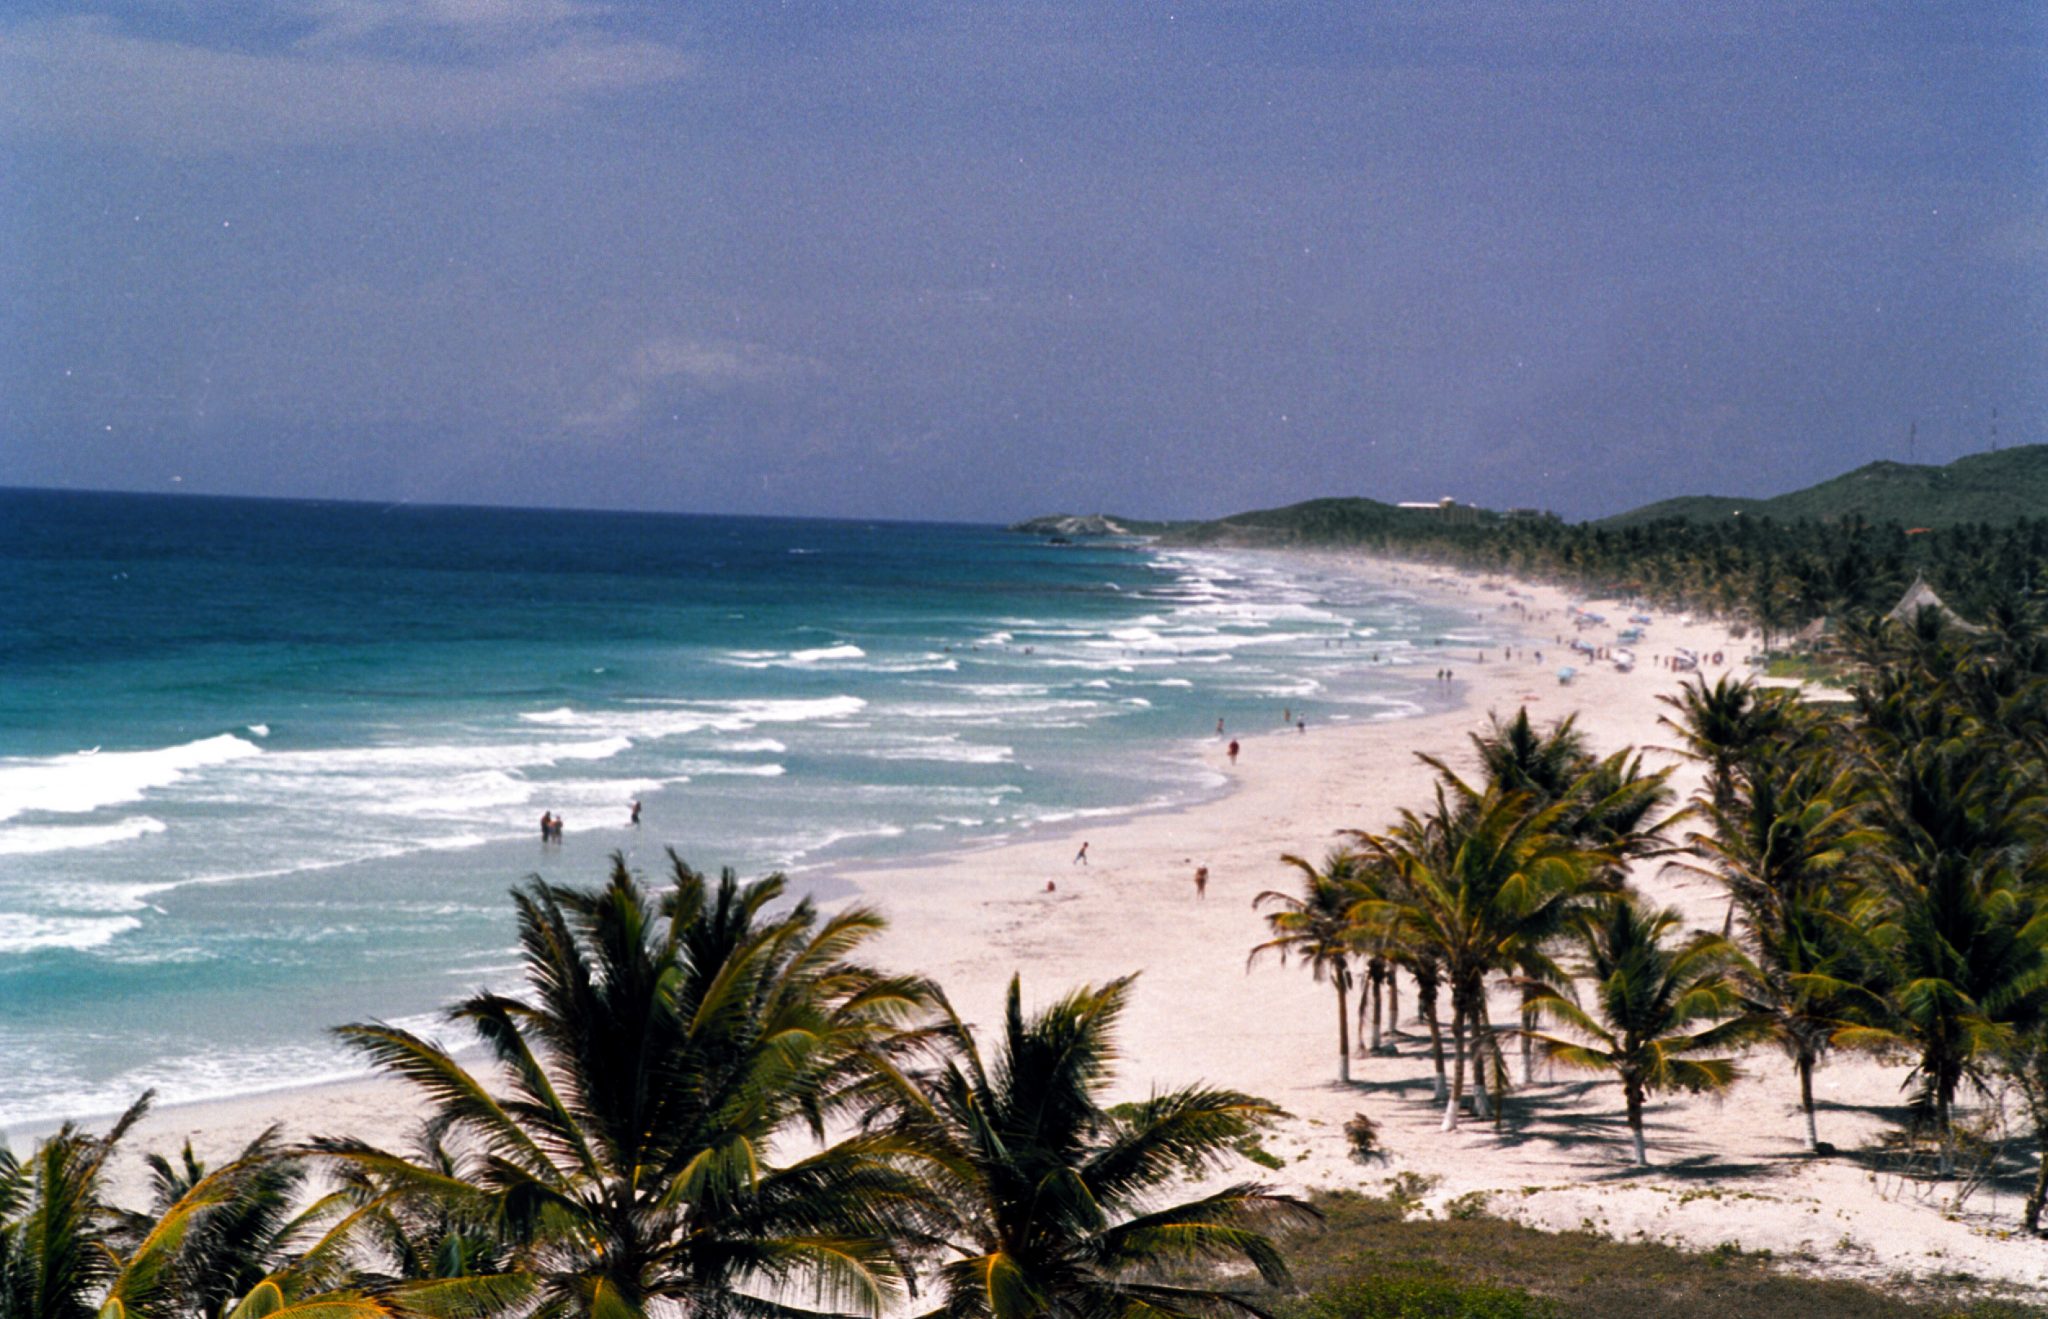 Al menos mil turistas rusos arribarán a Margarita para disfrutar de playas y posadas